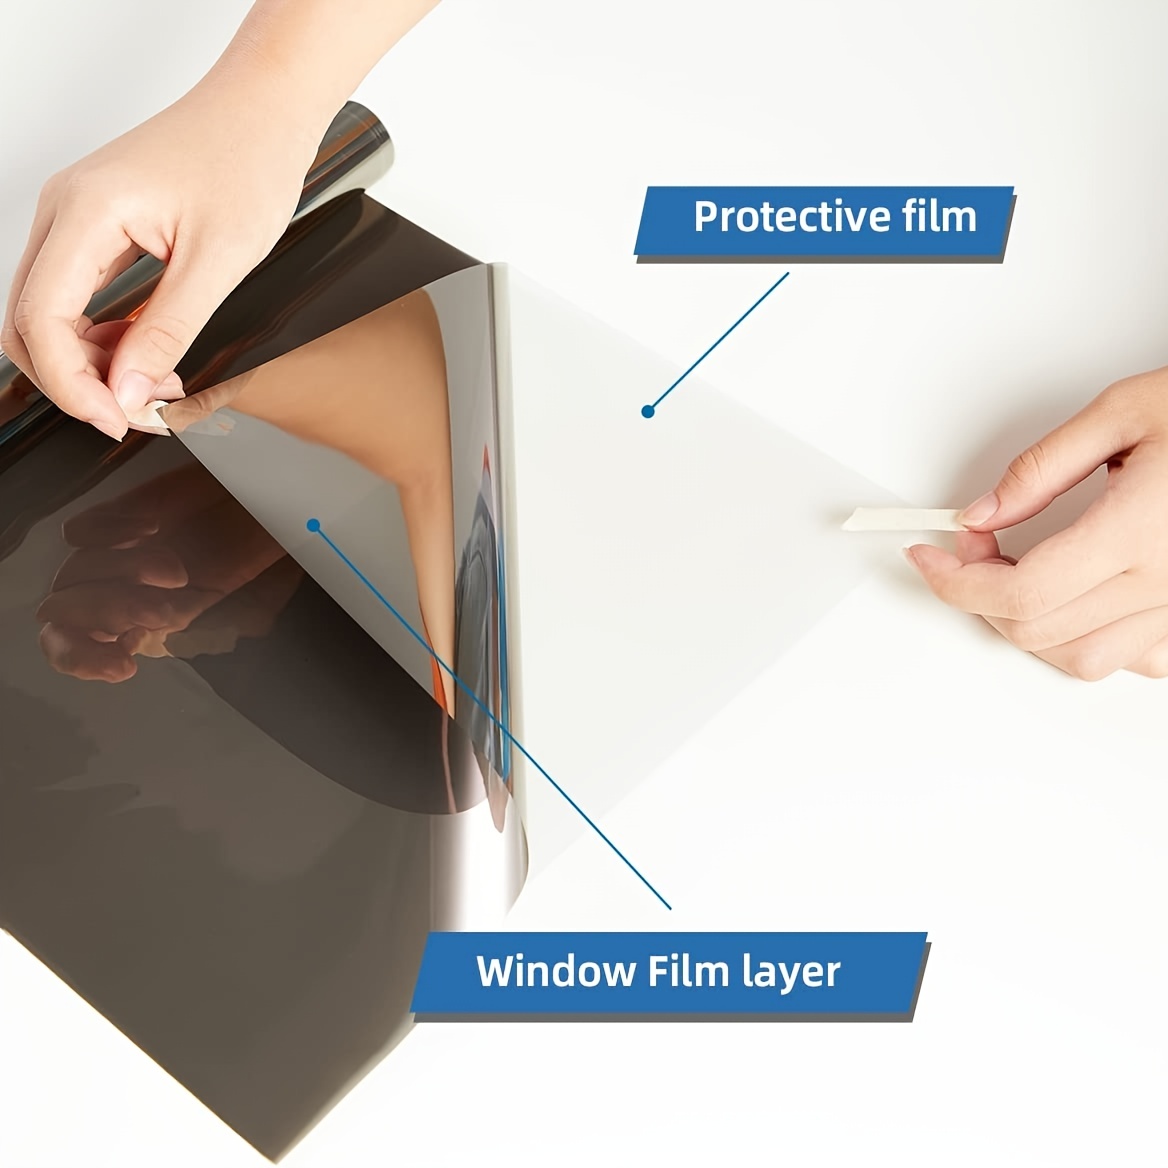 300x50cm Schwarz Auto Fenster Tönungsfolie Glas 5%-50% Rolle Auto Auto Fenster  Tönungsfolie für zu Hause Solar UV Schutz Aufkleber Film